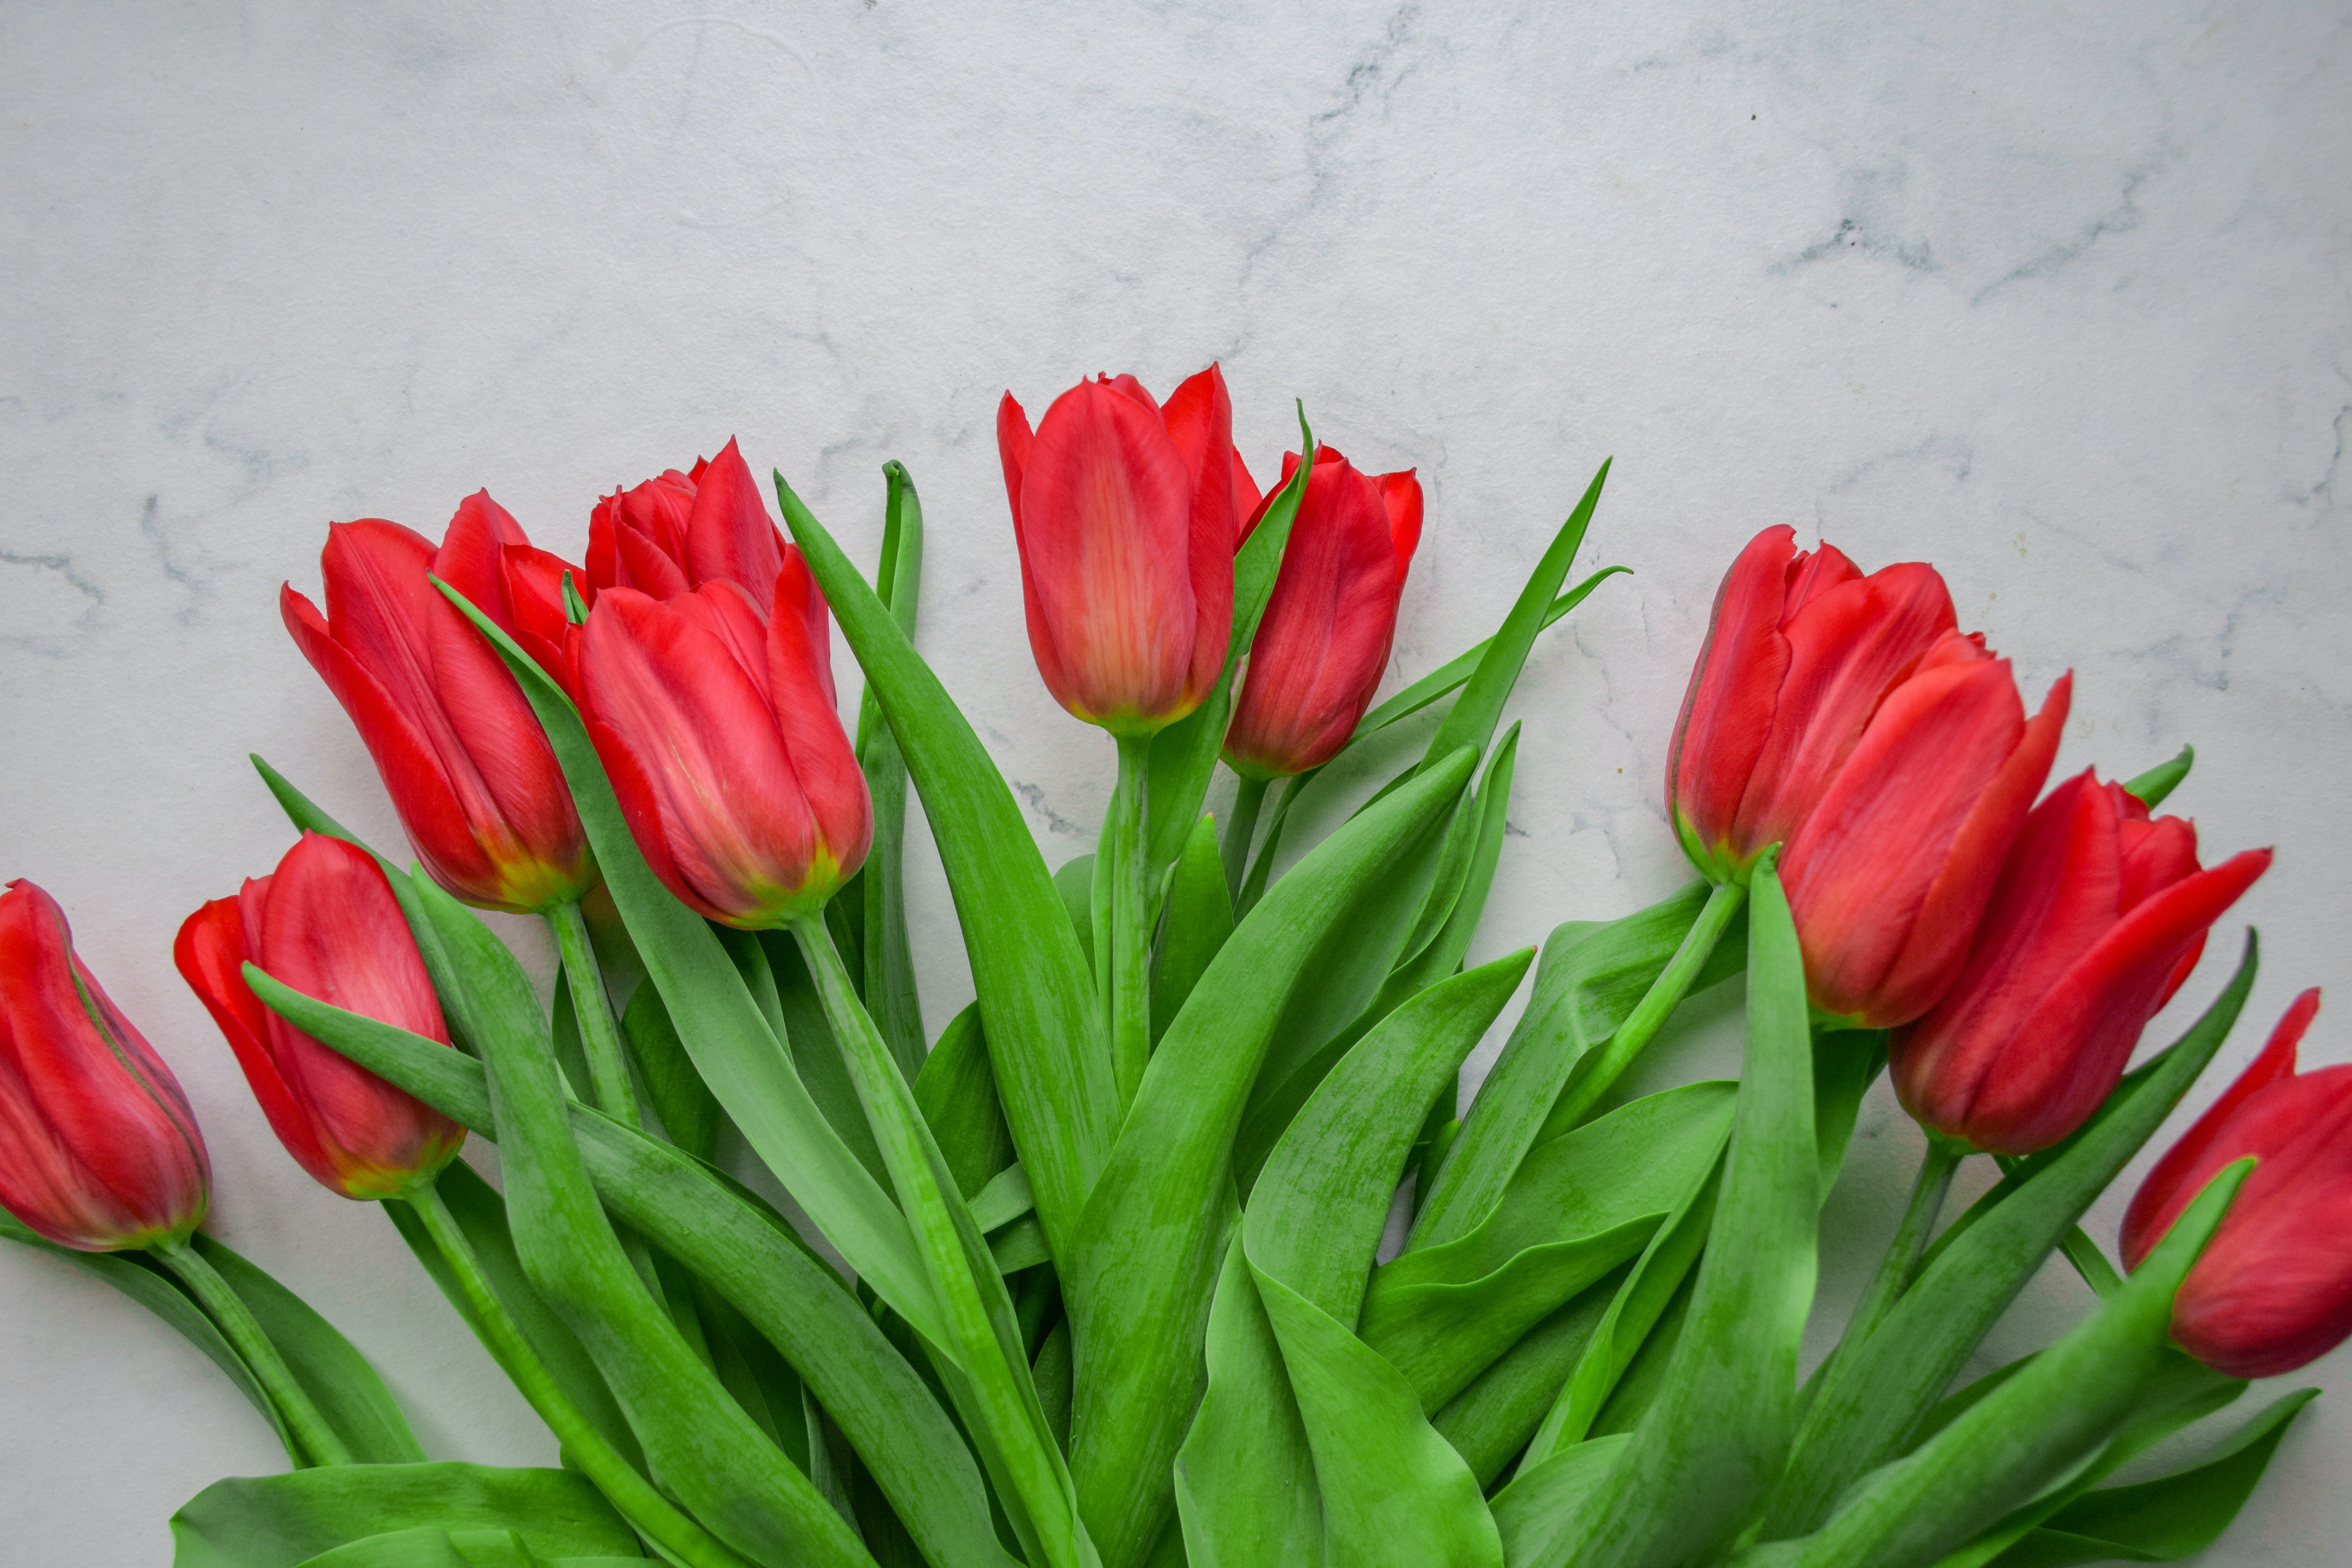 Hope und David stellen die Tulpen auf Claires Grab. | Quelle: Unsplash